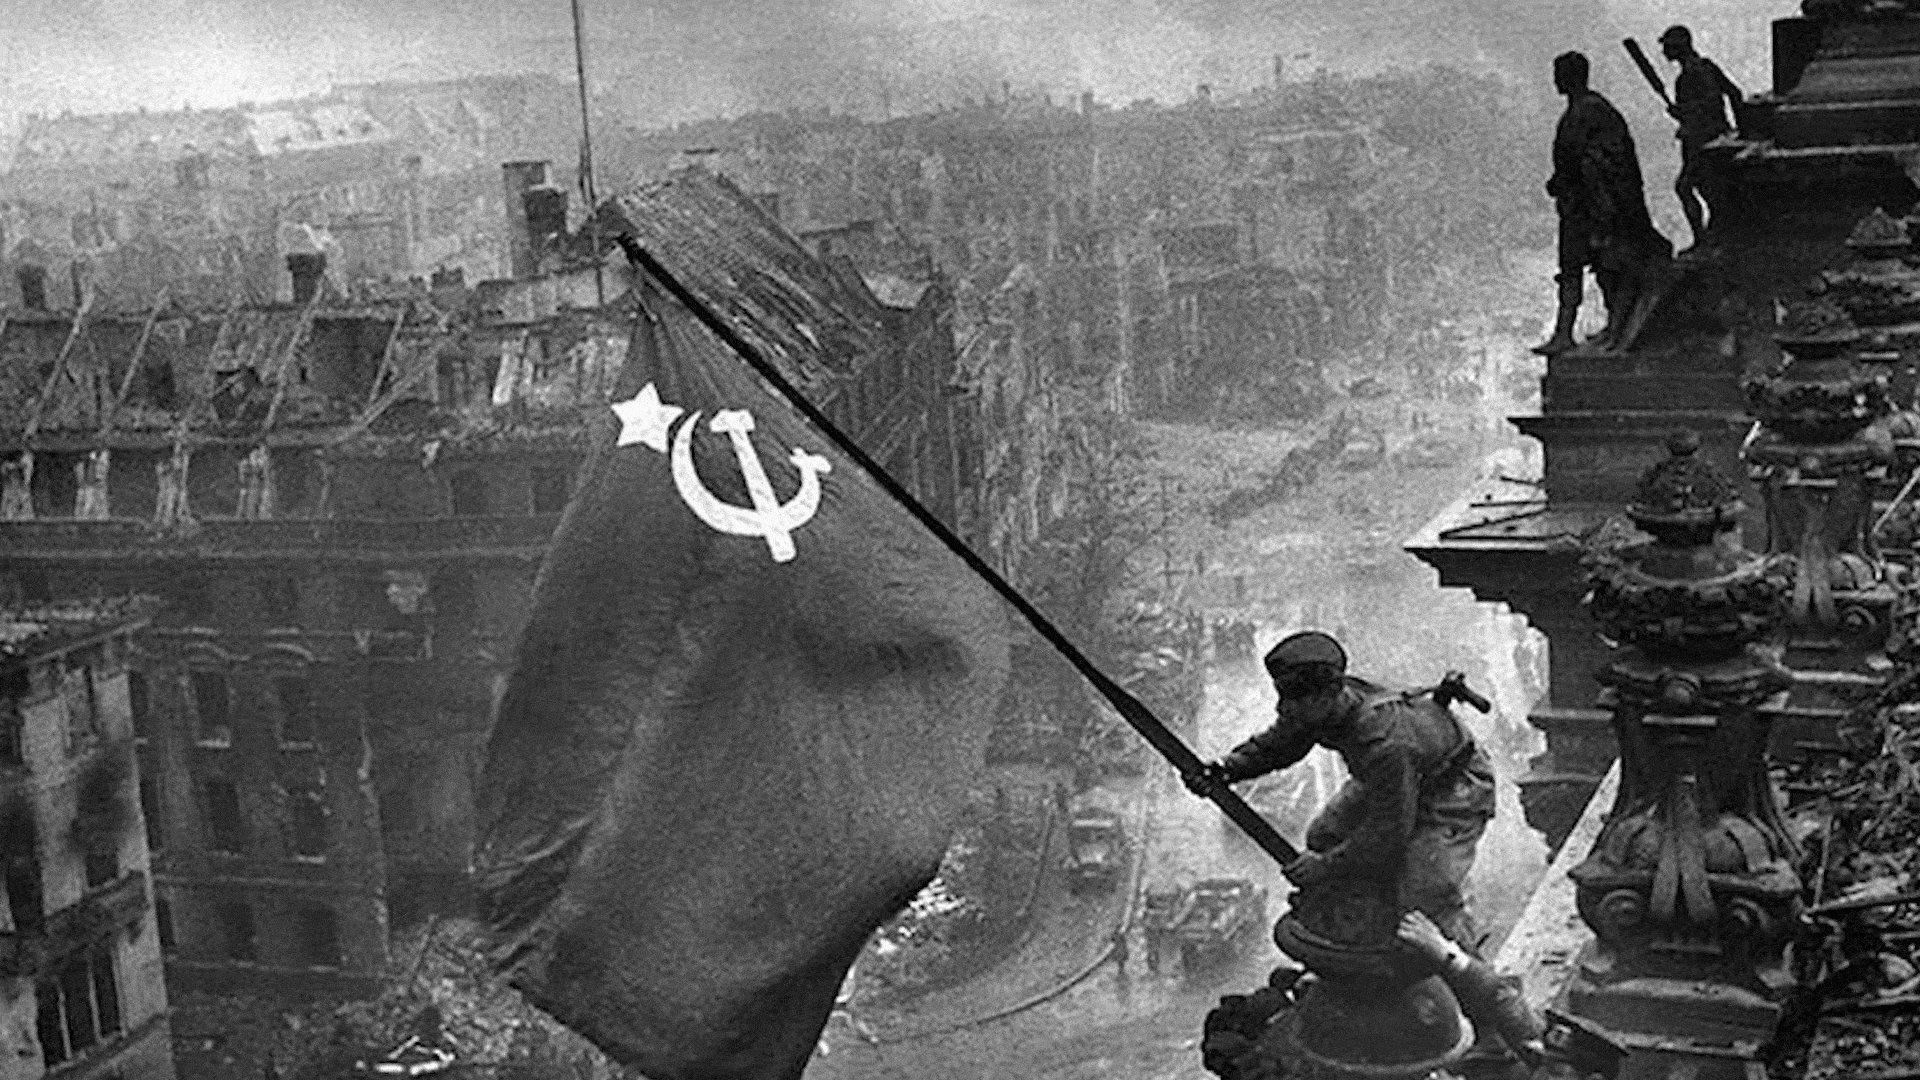 原创德军拿不下莫斯科苏军在四年后却能一举攻占柏林差别在哪里